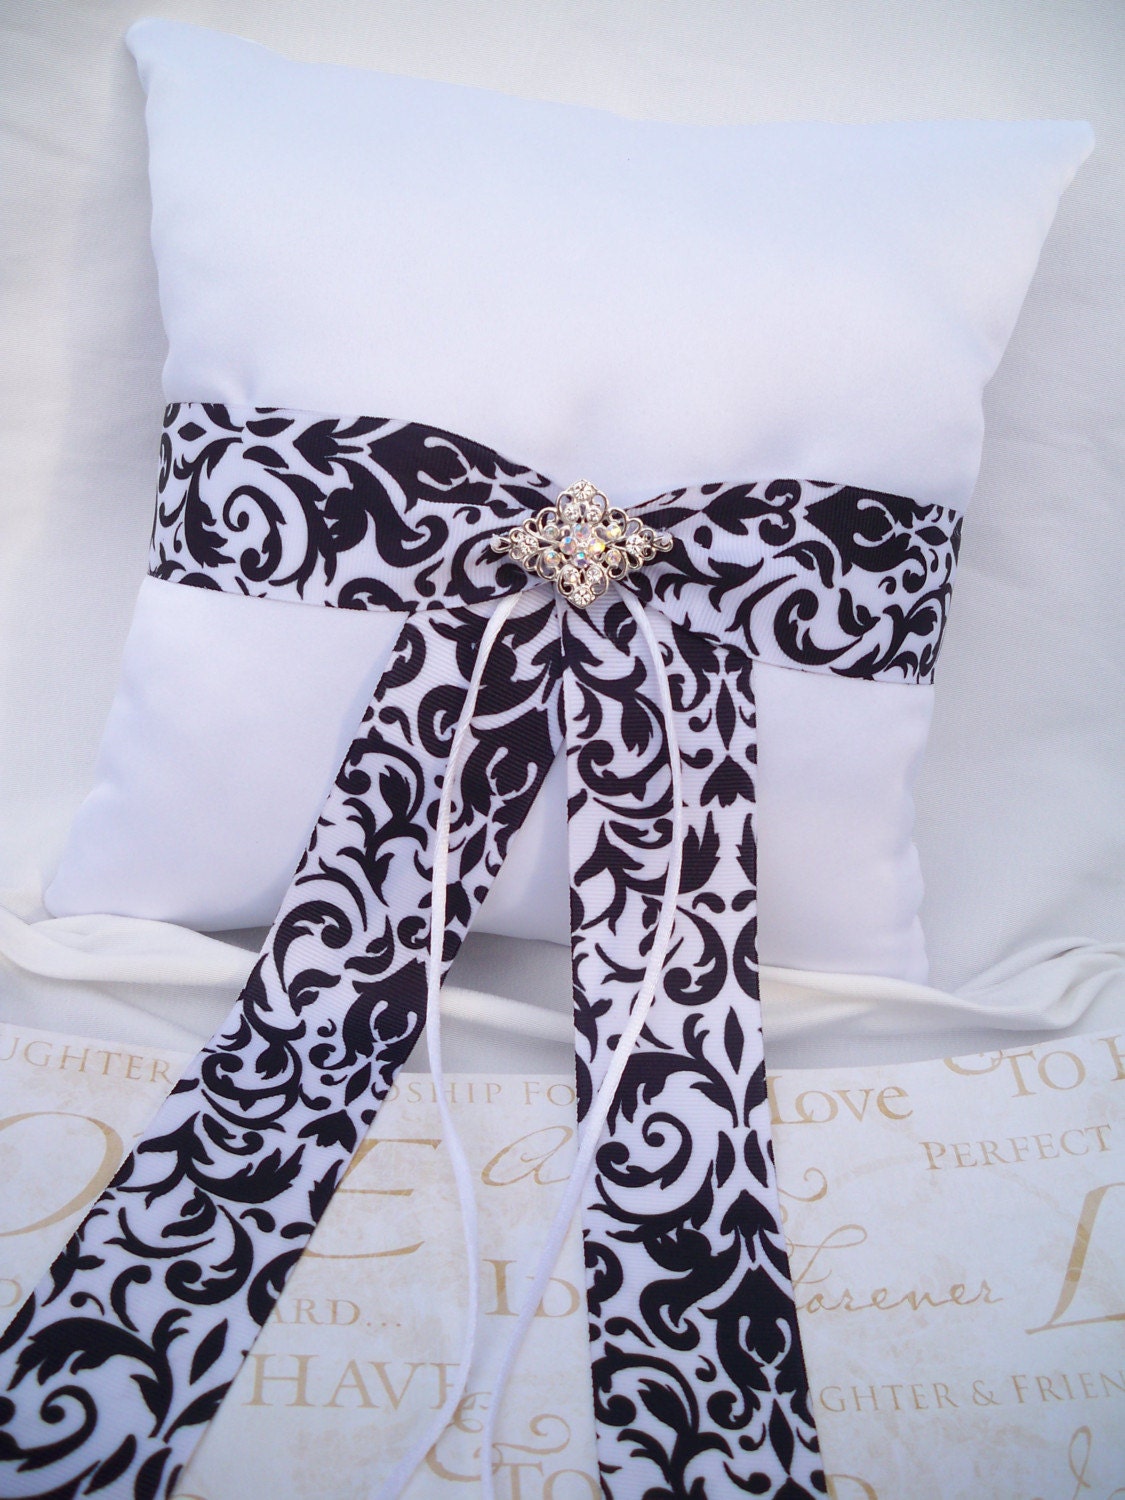 Damask black and white satin wedding ring pillow 